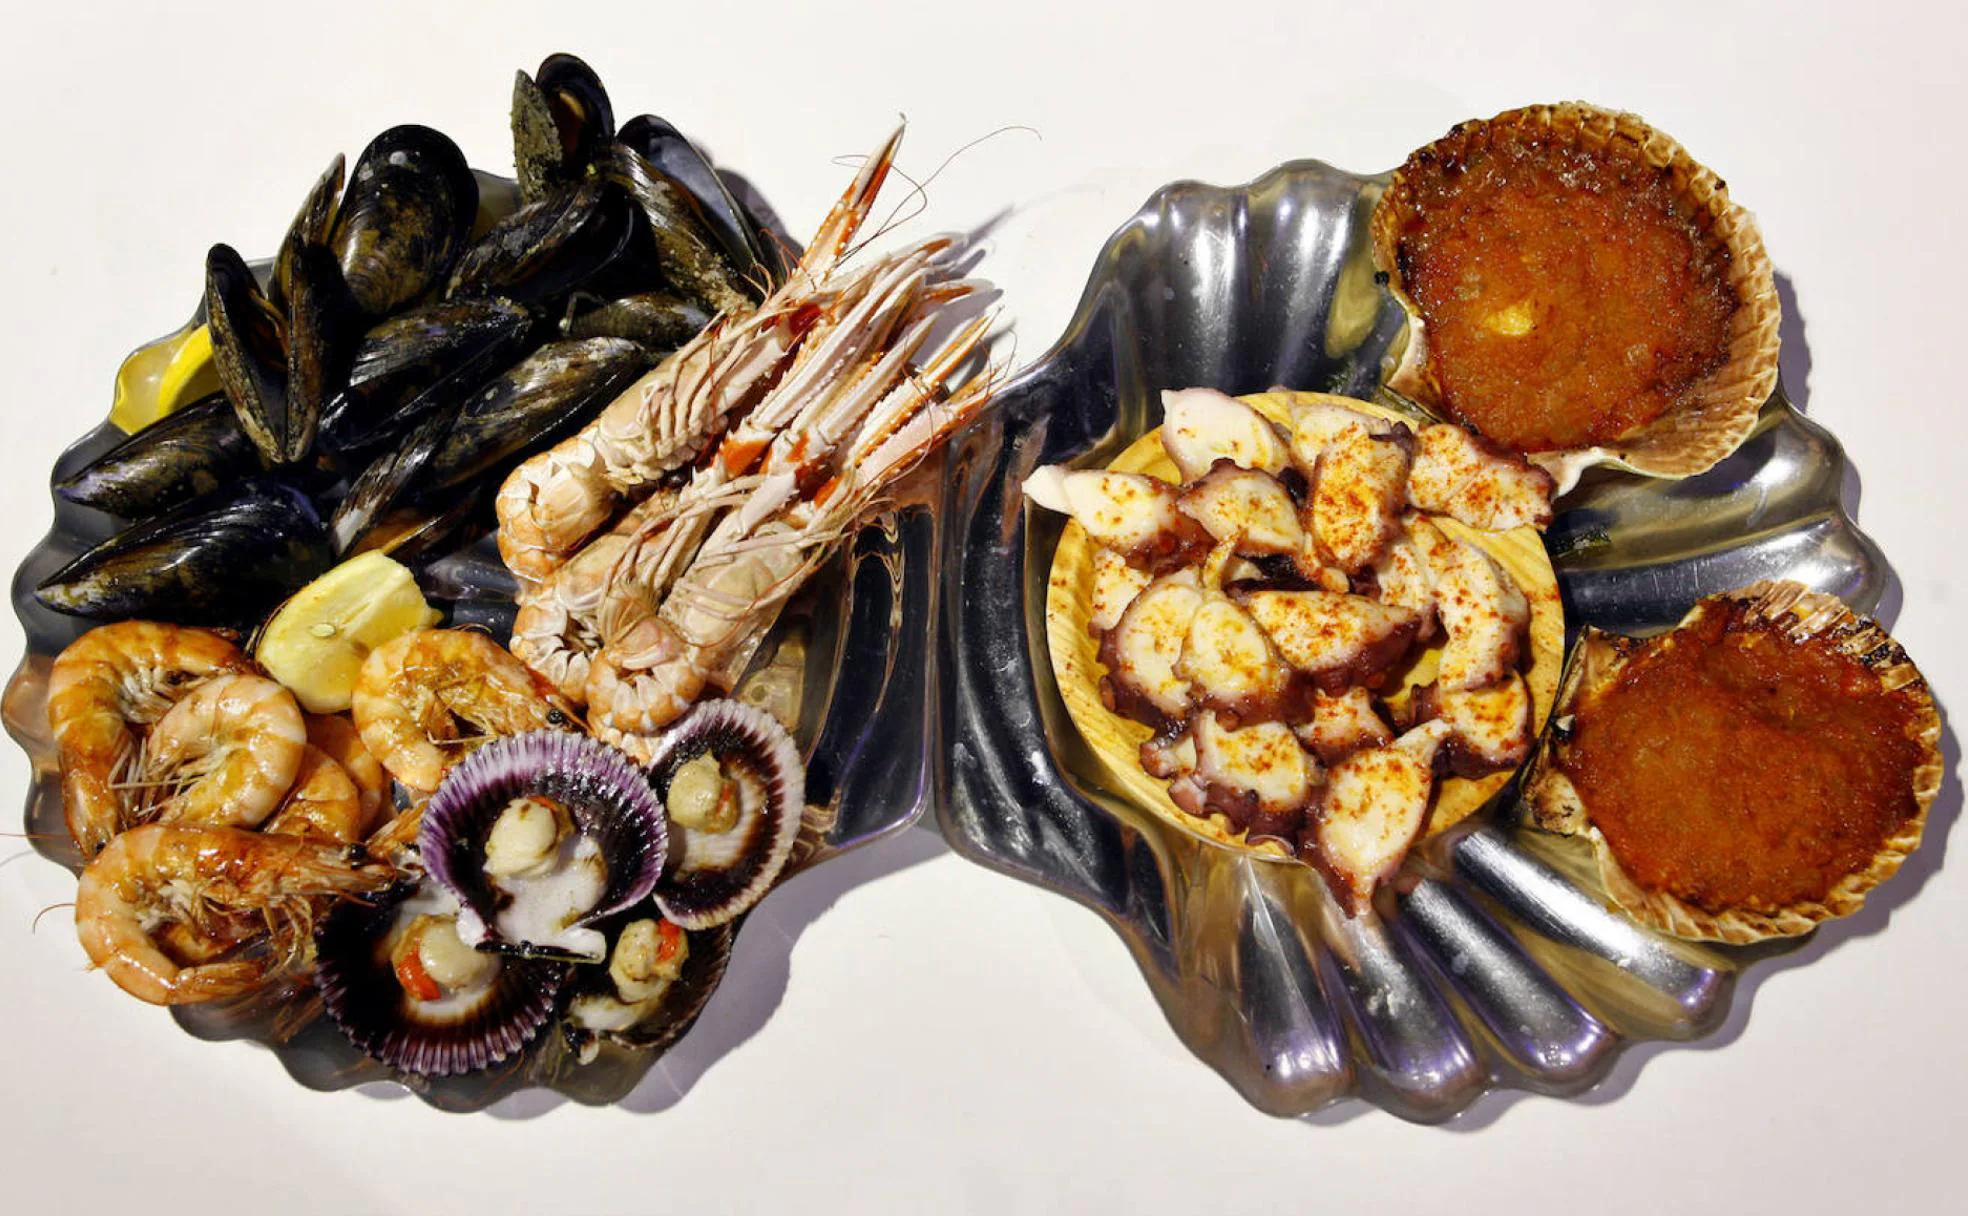 Ganas de comer pescado y rico marisco por Cantabria? | El Diario Montañés